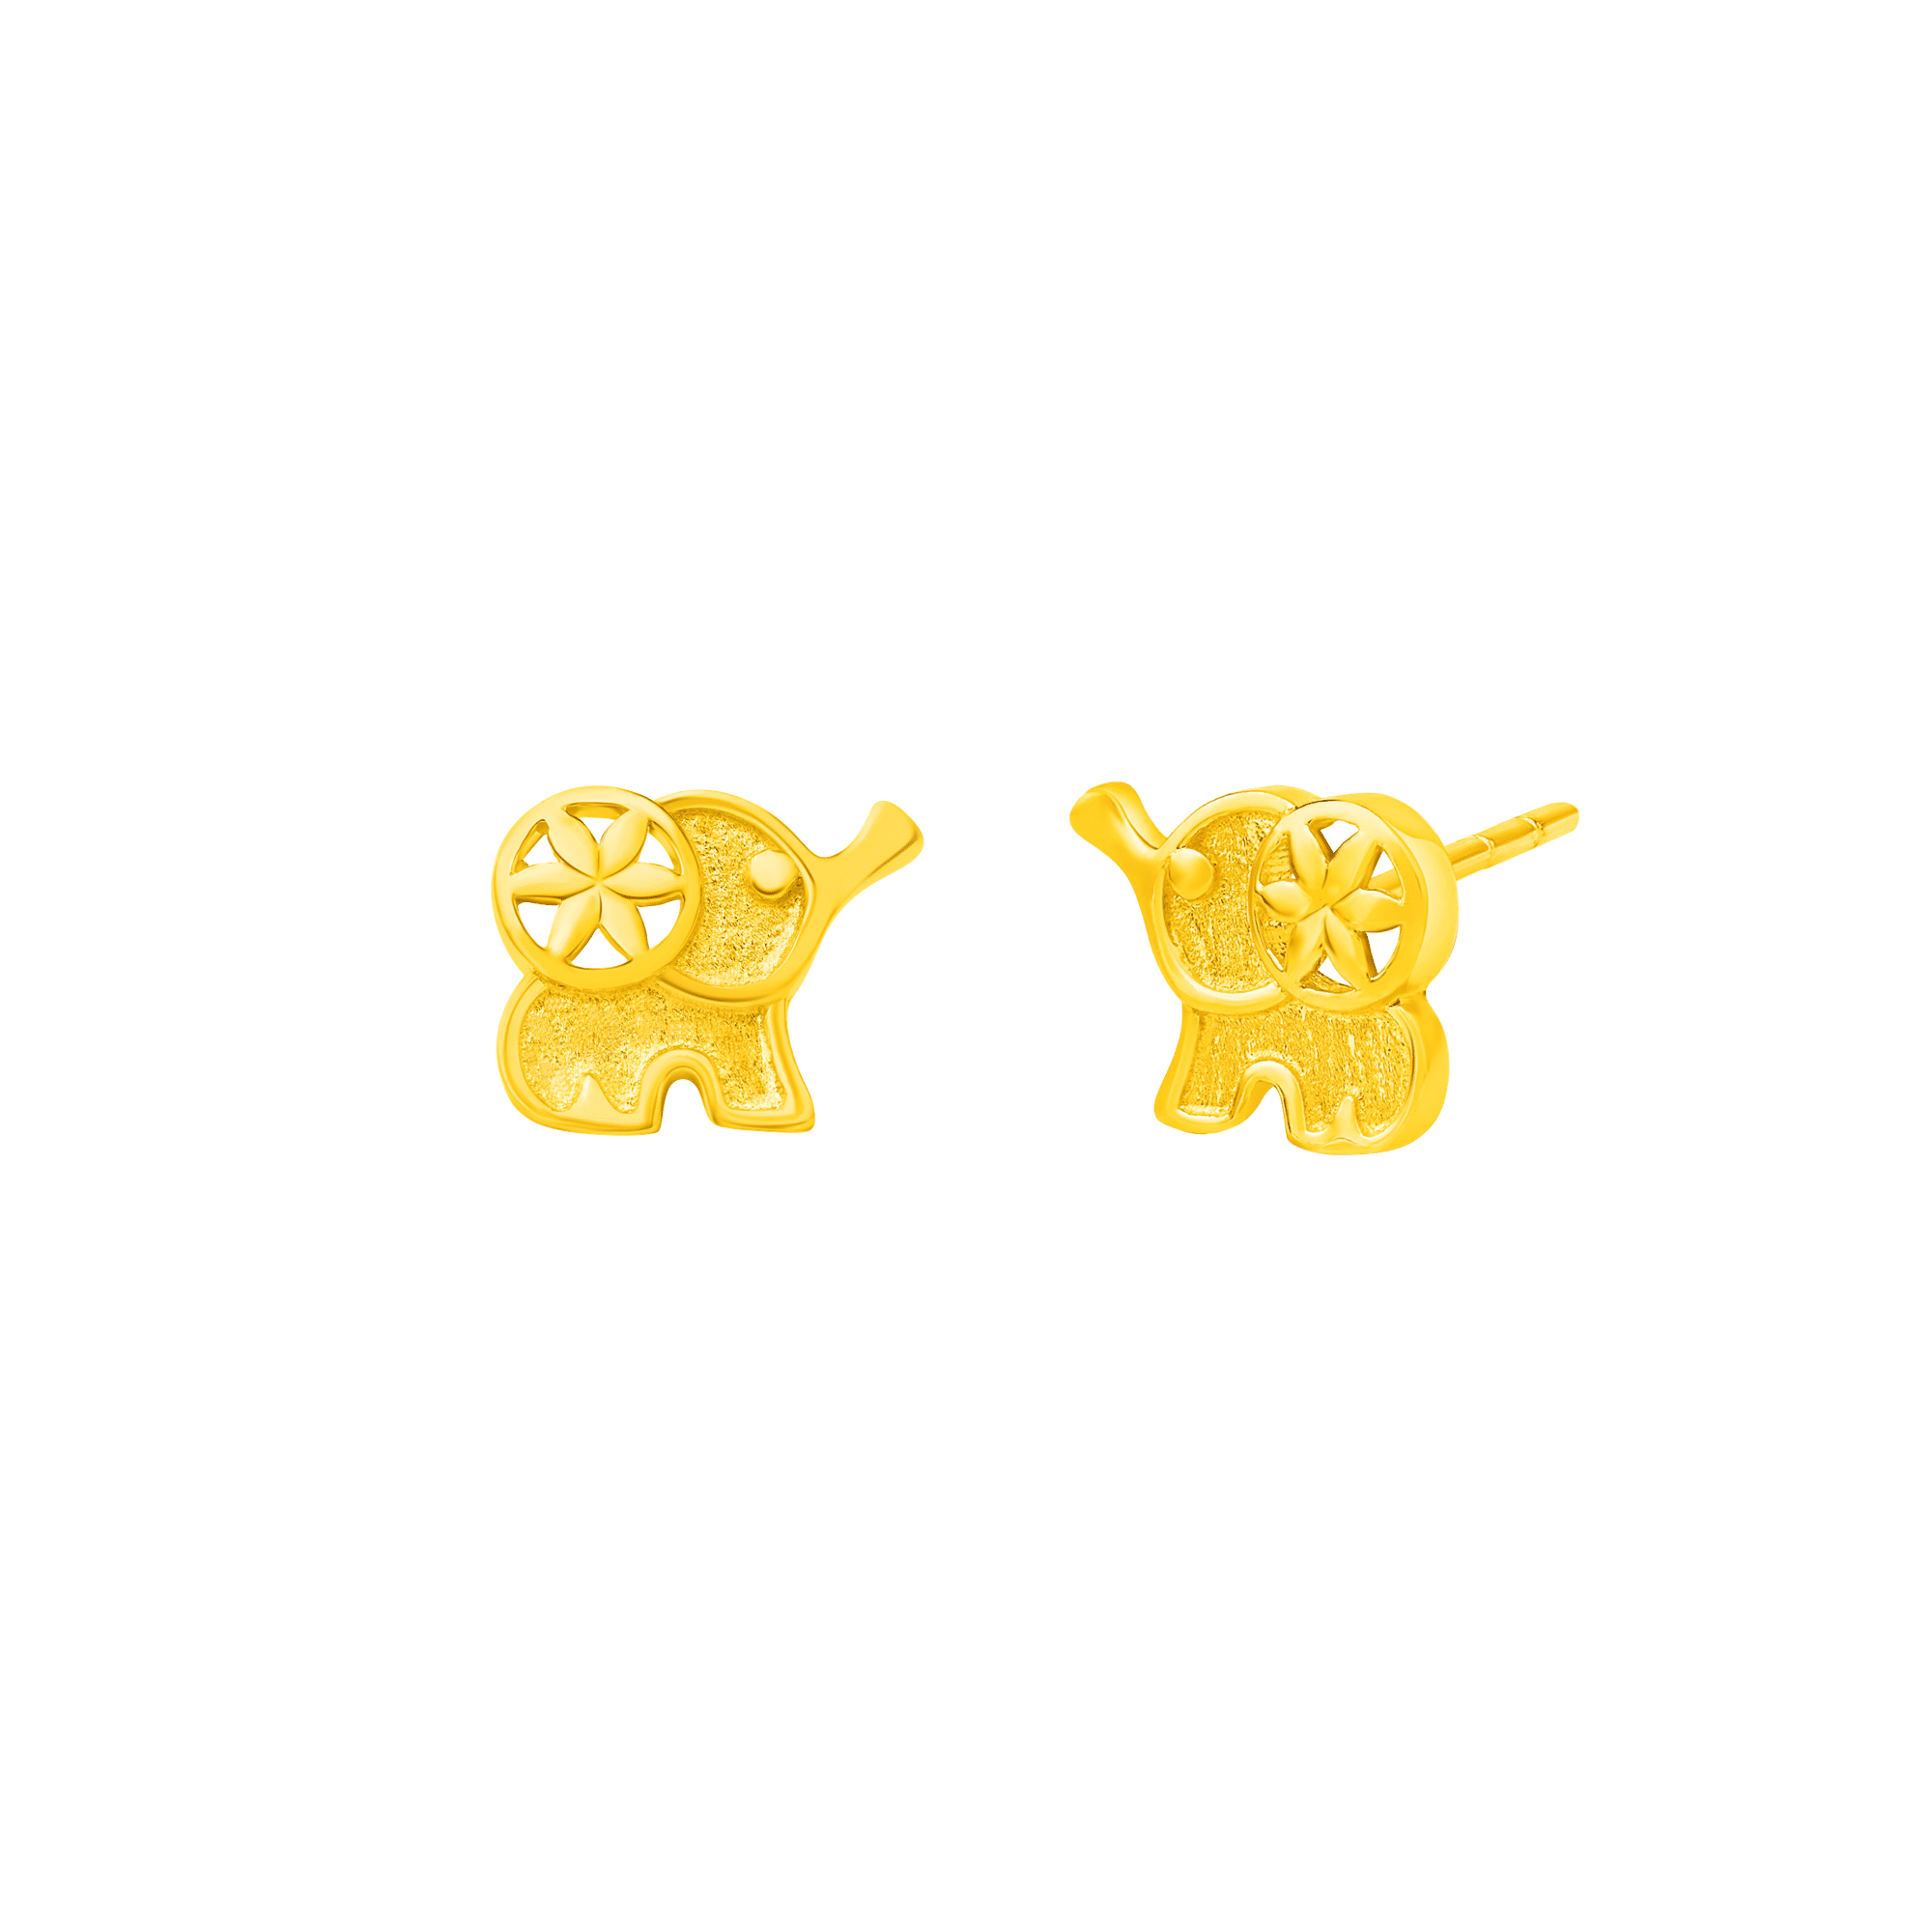 Elle the Elephant Earrings in 916 Gold